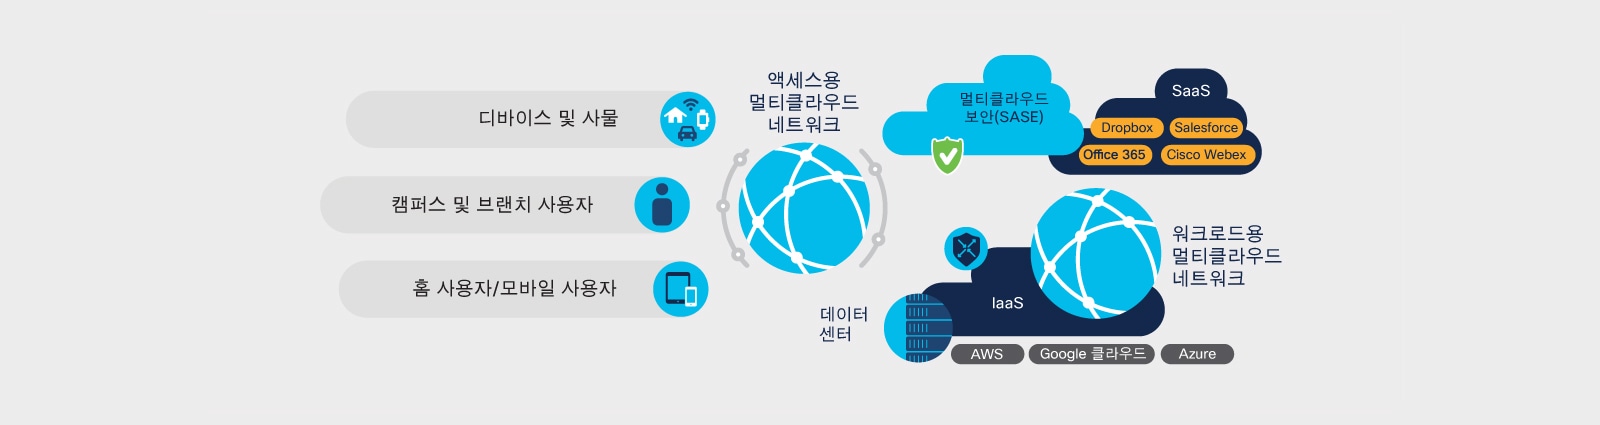 그림 4. 멀티클라우드 네트워크: 워크로드, 액세스 및 보안